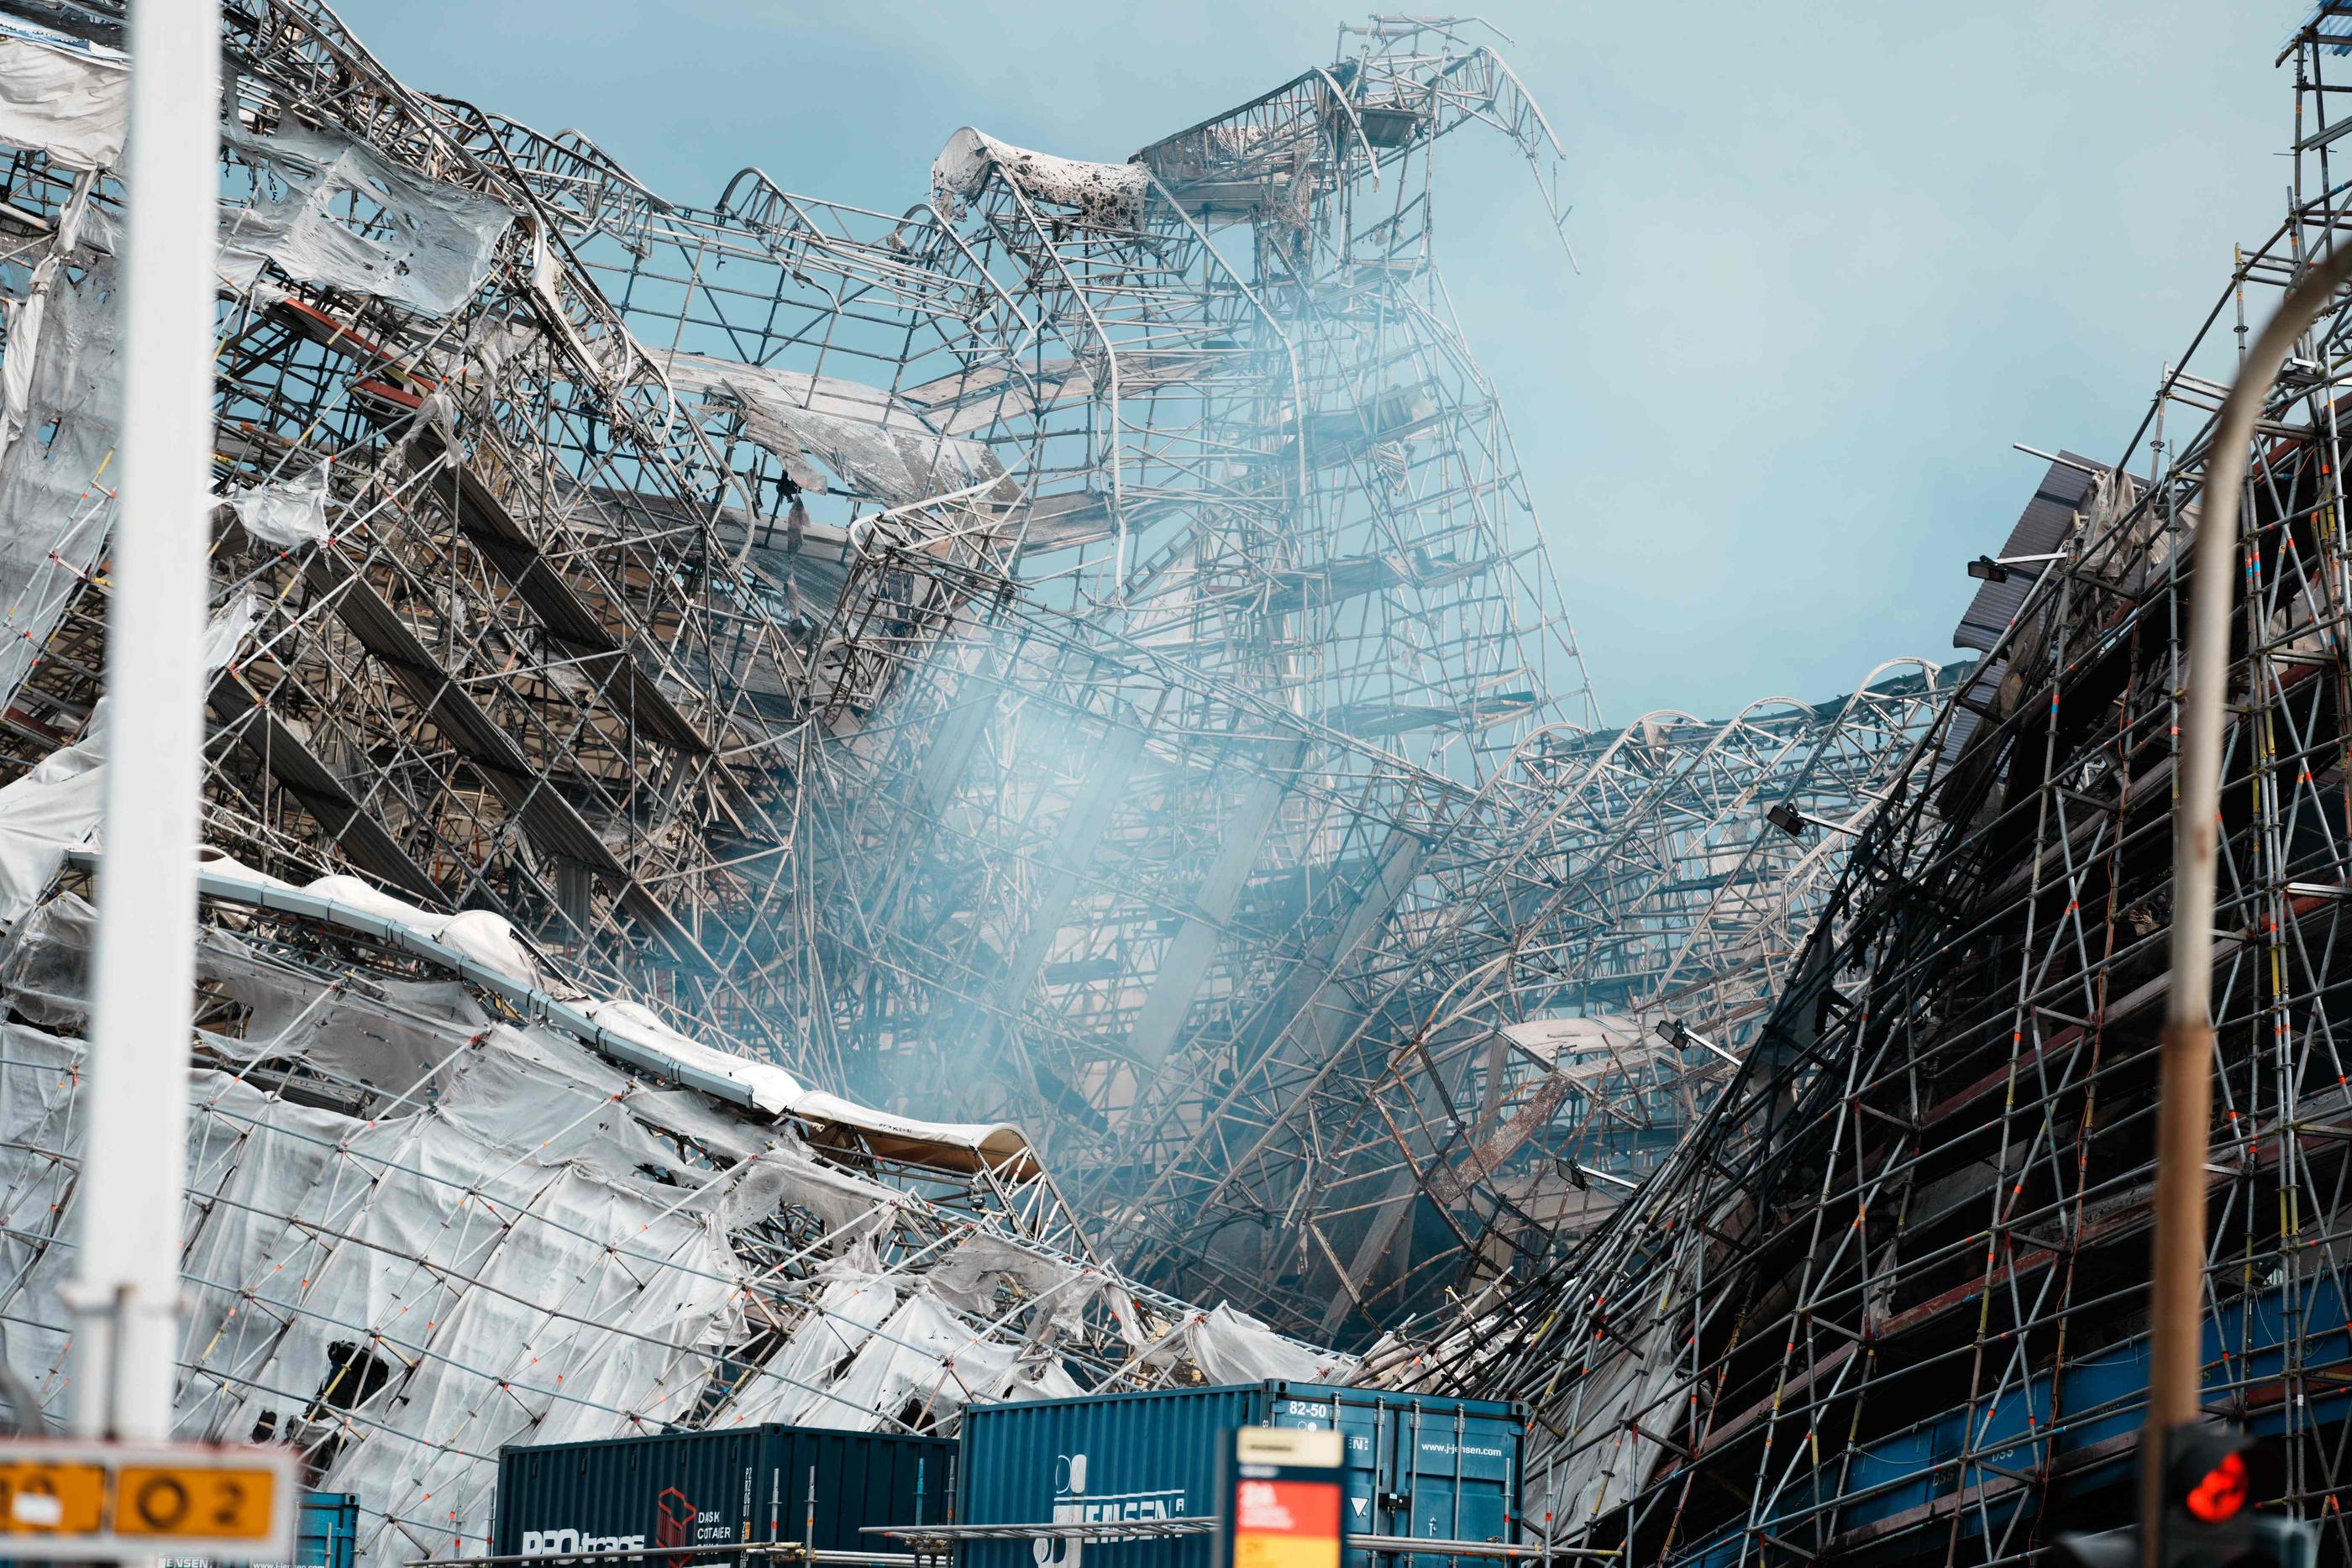 Après la flèche, la façade calcinée de la vieille Bourse s’est effondrée. AFP/Thomas Traasdahl/Ritzau Scanpix